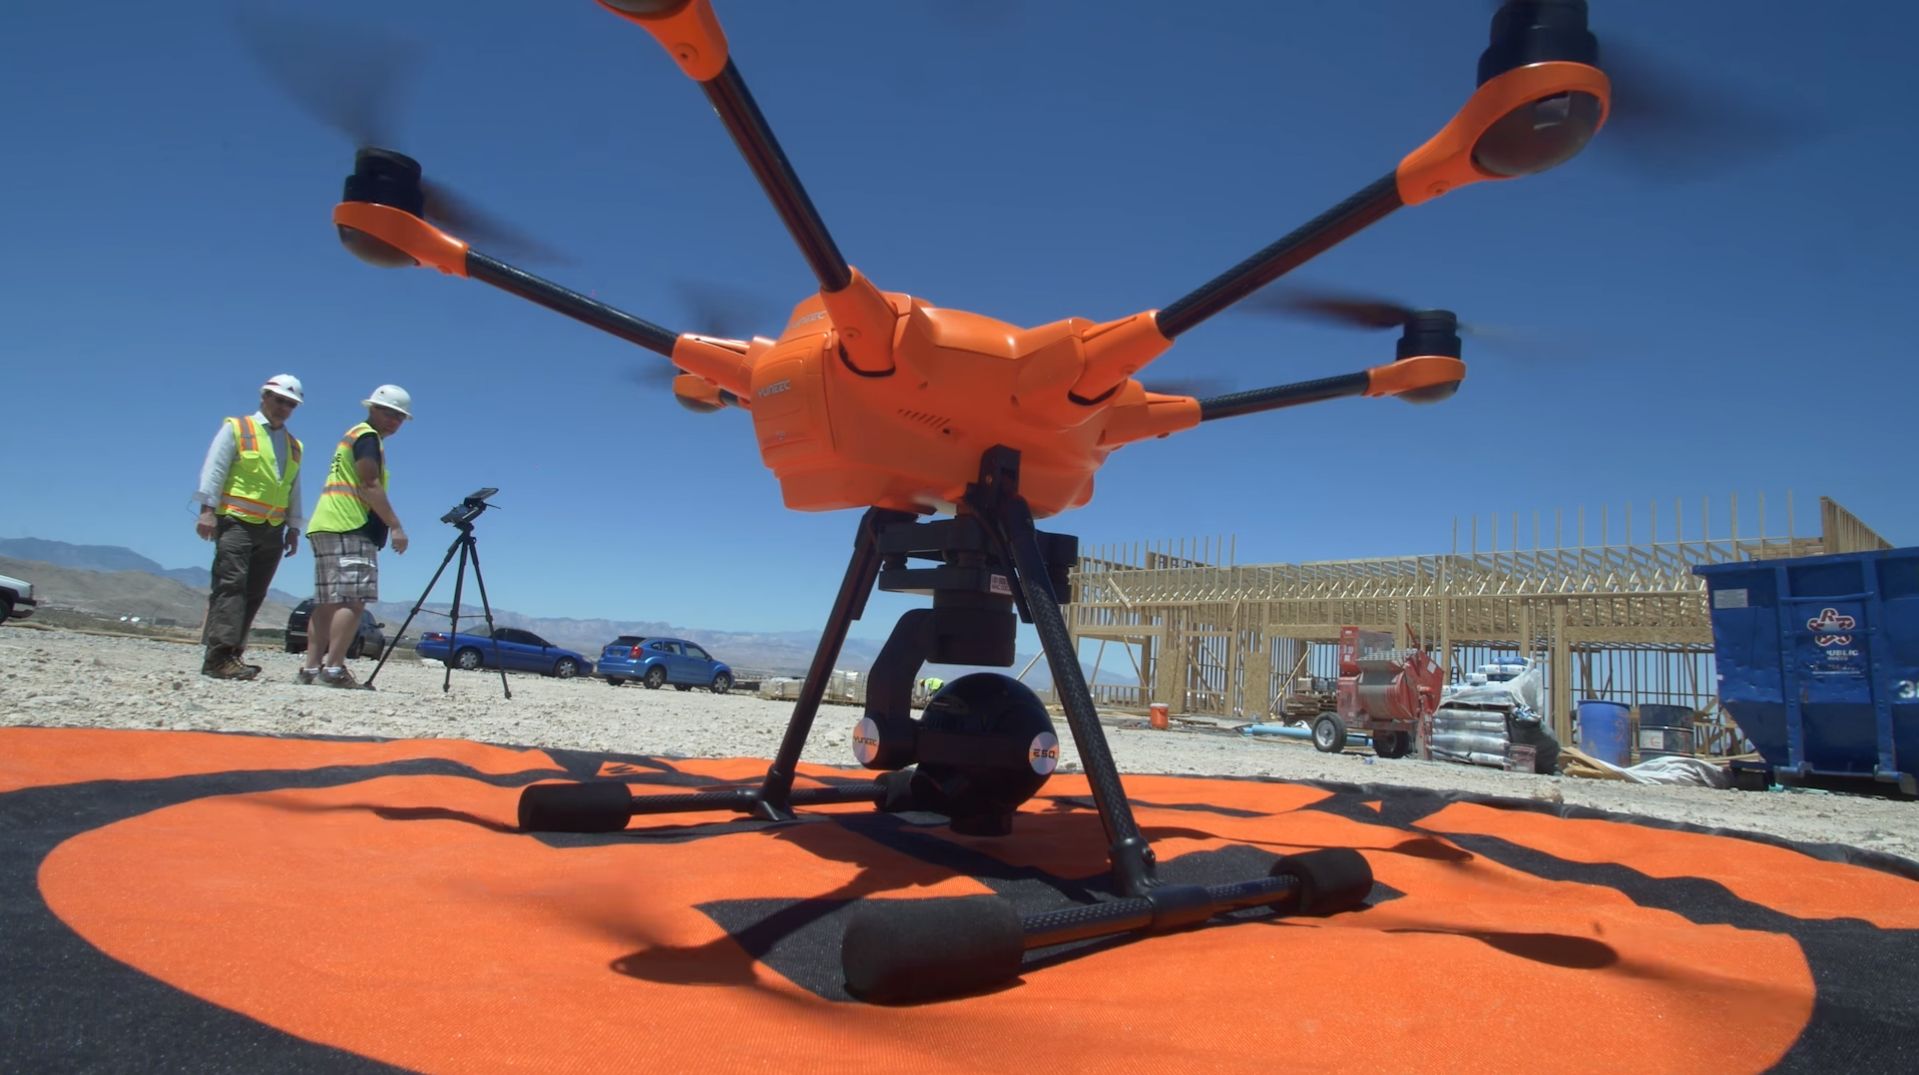 Jednym z podstawowych zastosowań dronów jest nadzór nad prowadzonymi inwestycjami oraz utrzymaniem istniejącej infrastruktury. Z danych firmy badawczej PwC wynika, że wartość wykorzystania technologii dronowych w infrastrukturze szacowana jest na ponad 45 mld dolarów. Fot. AeroMind